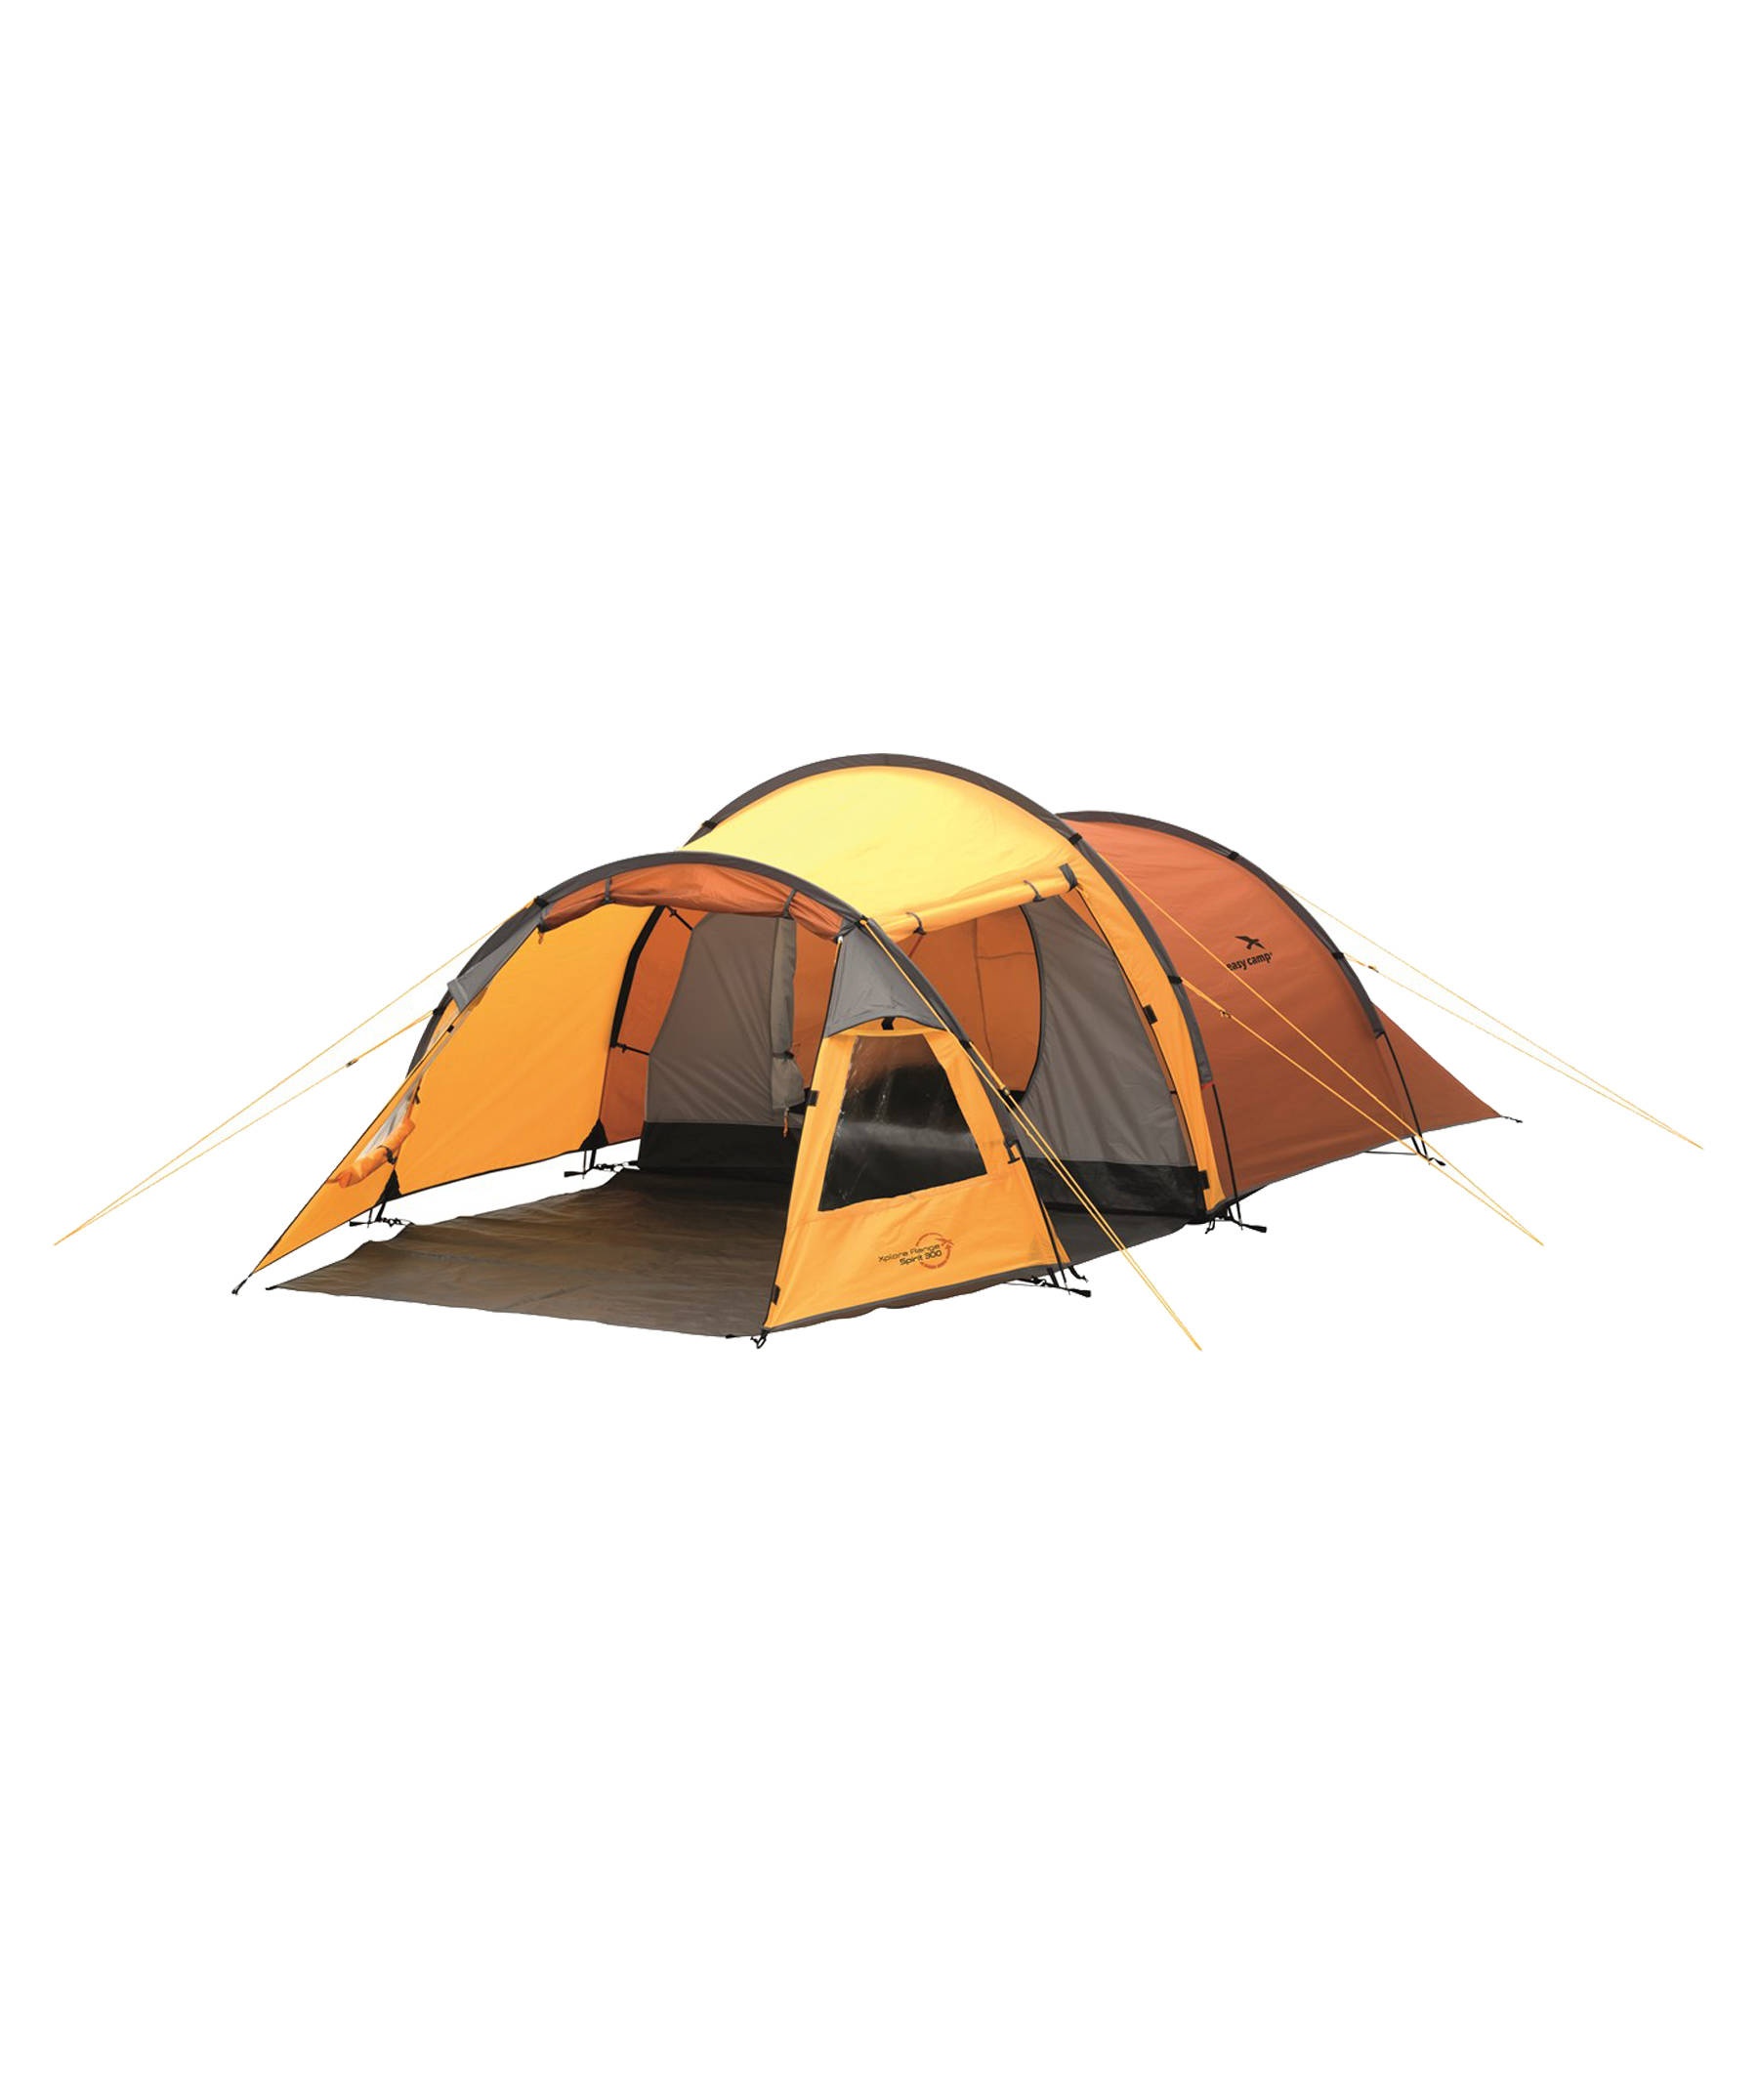 Zelte: Nachtlager für Outdoorer und Festivallover